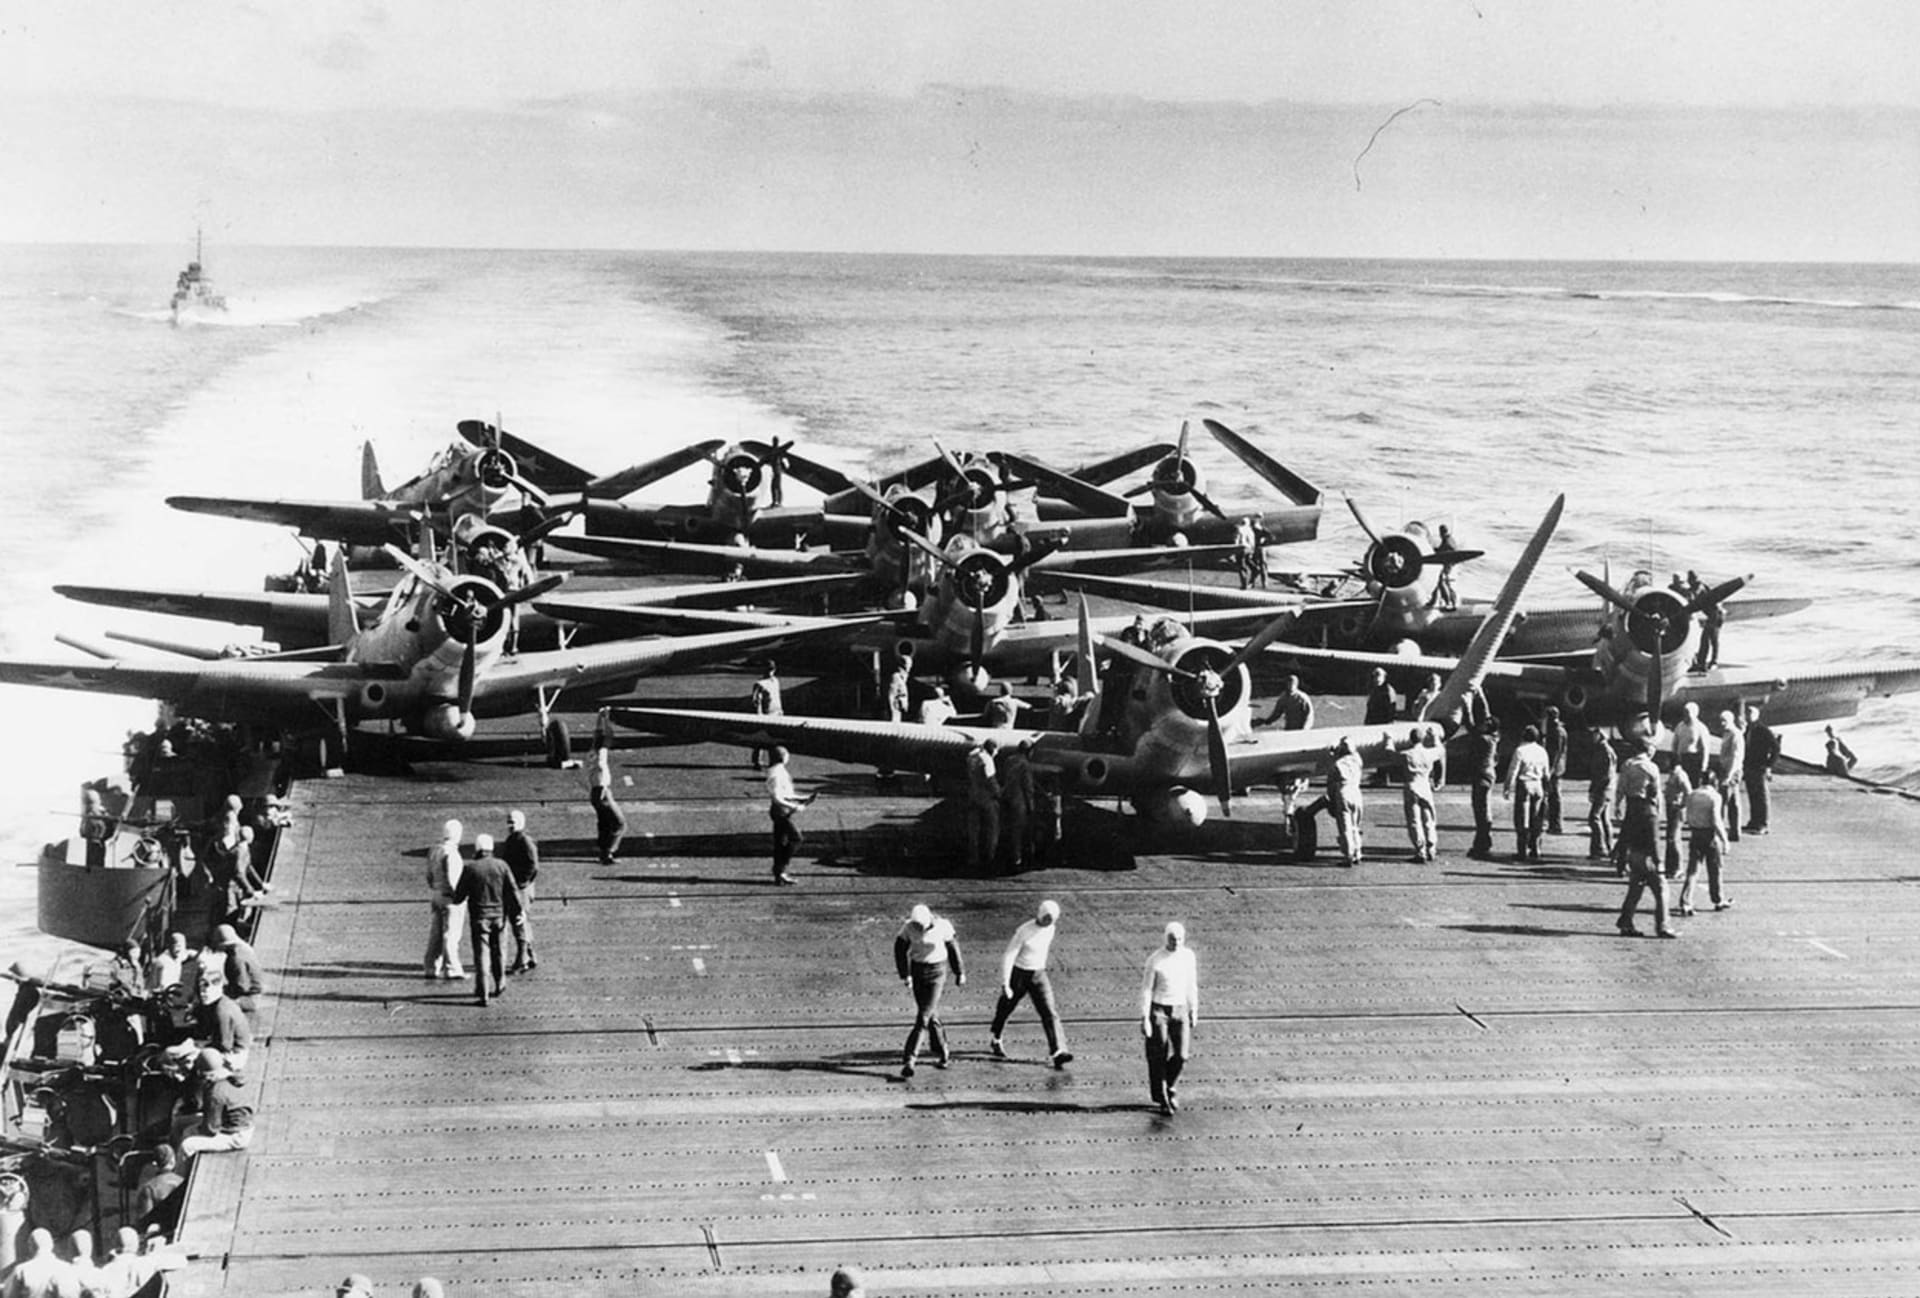 Bitva o Midway byla zásadním bodem války v Tichomoří